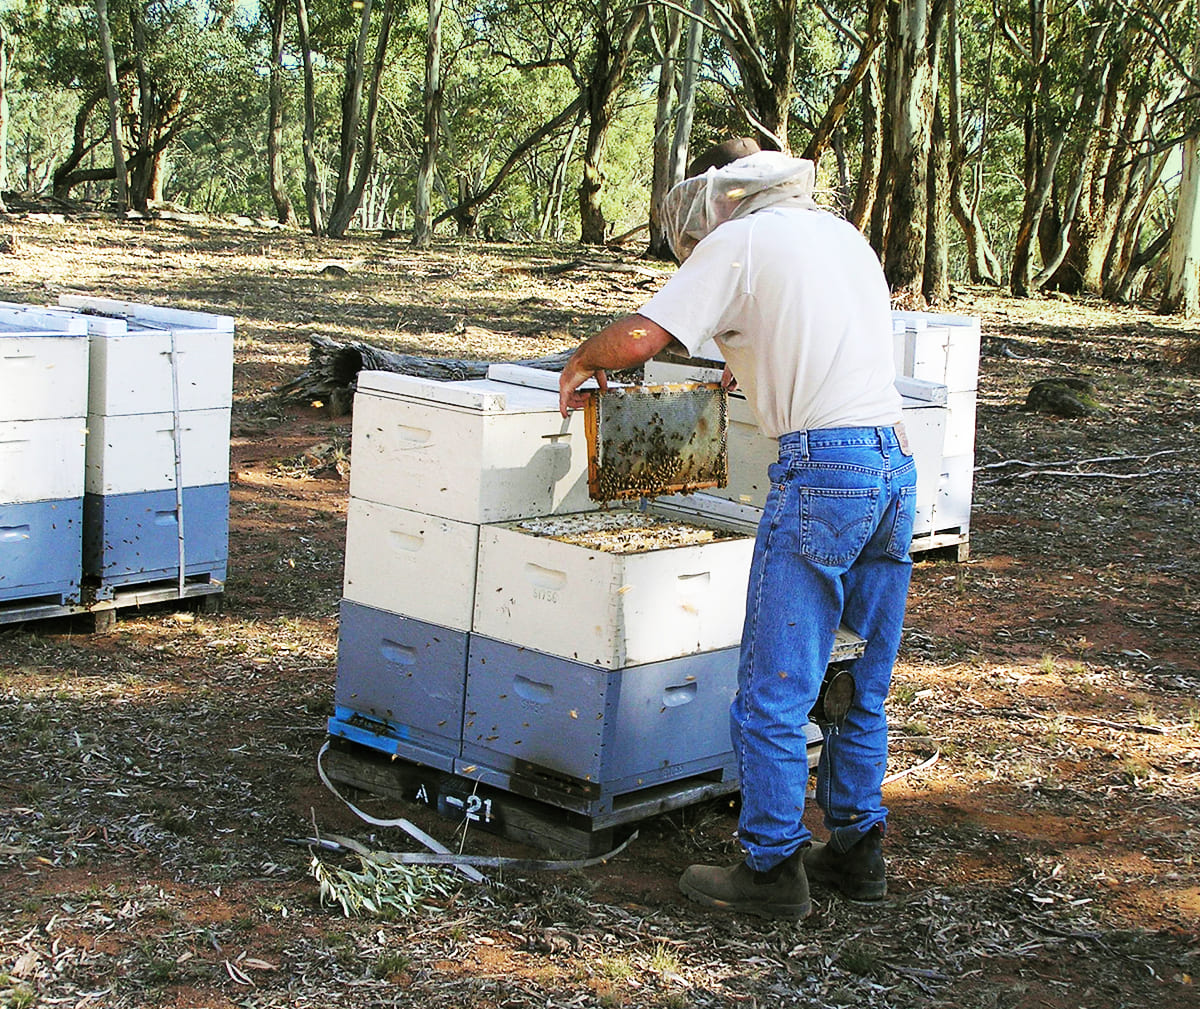 harvesting manuka honey